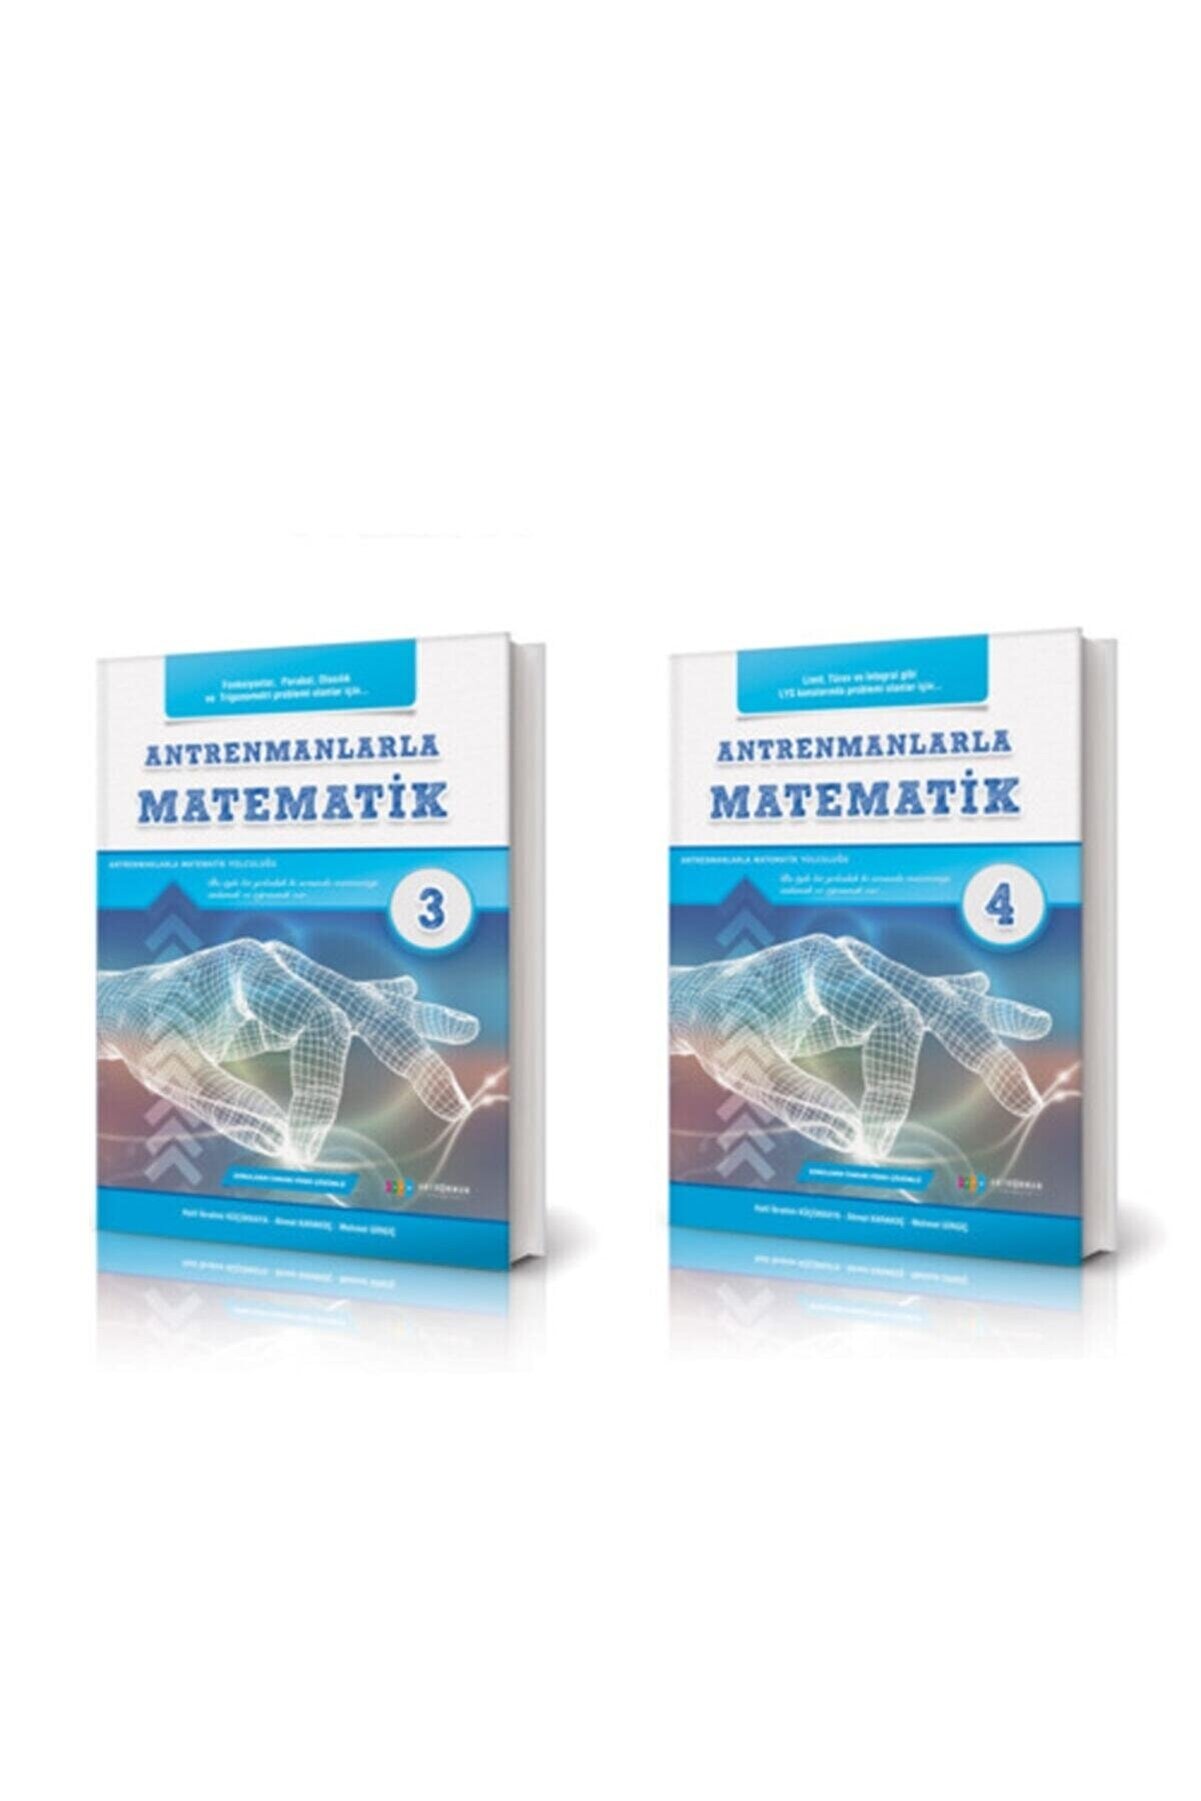 Antrenman Yayınları Antrenmanlarla Matematik 3- 4 Set 2 Kitap